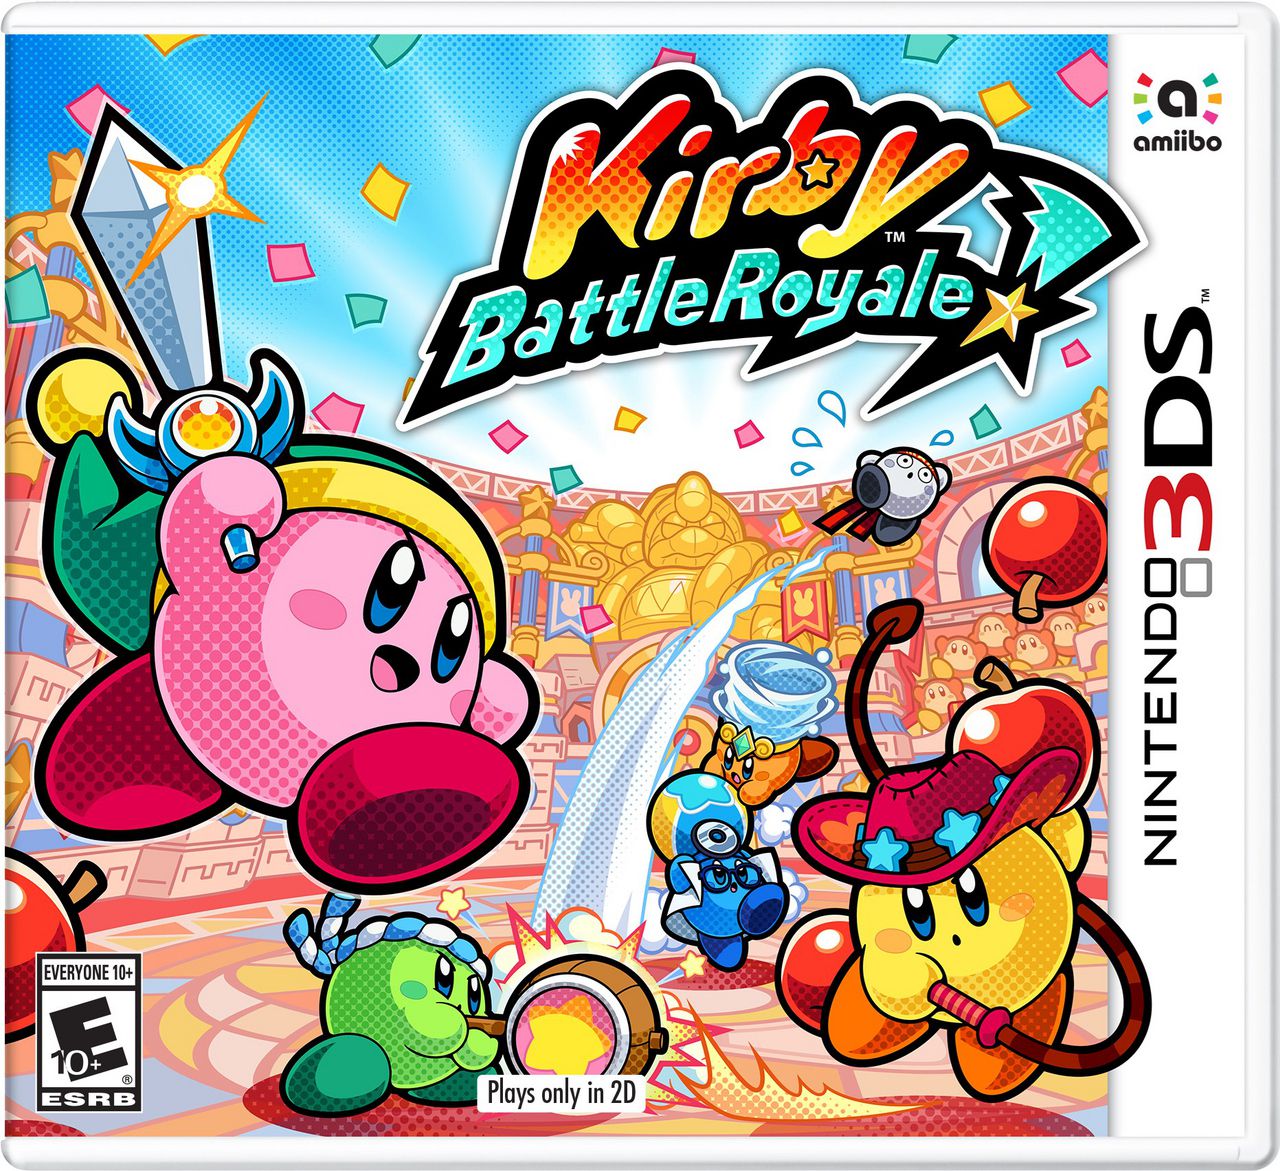 jaquette reduite de Kirby Battle Royale sur 3DS